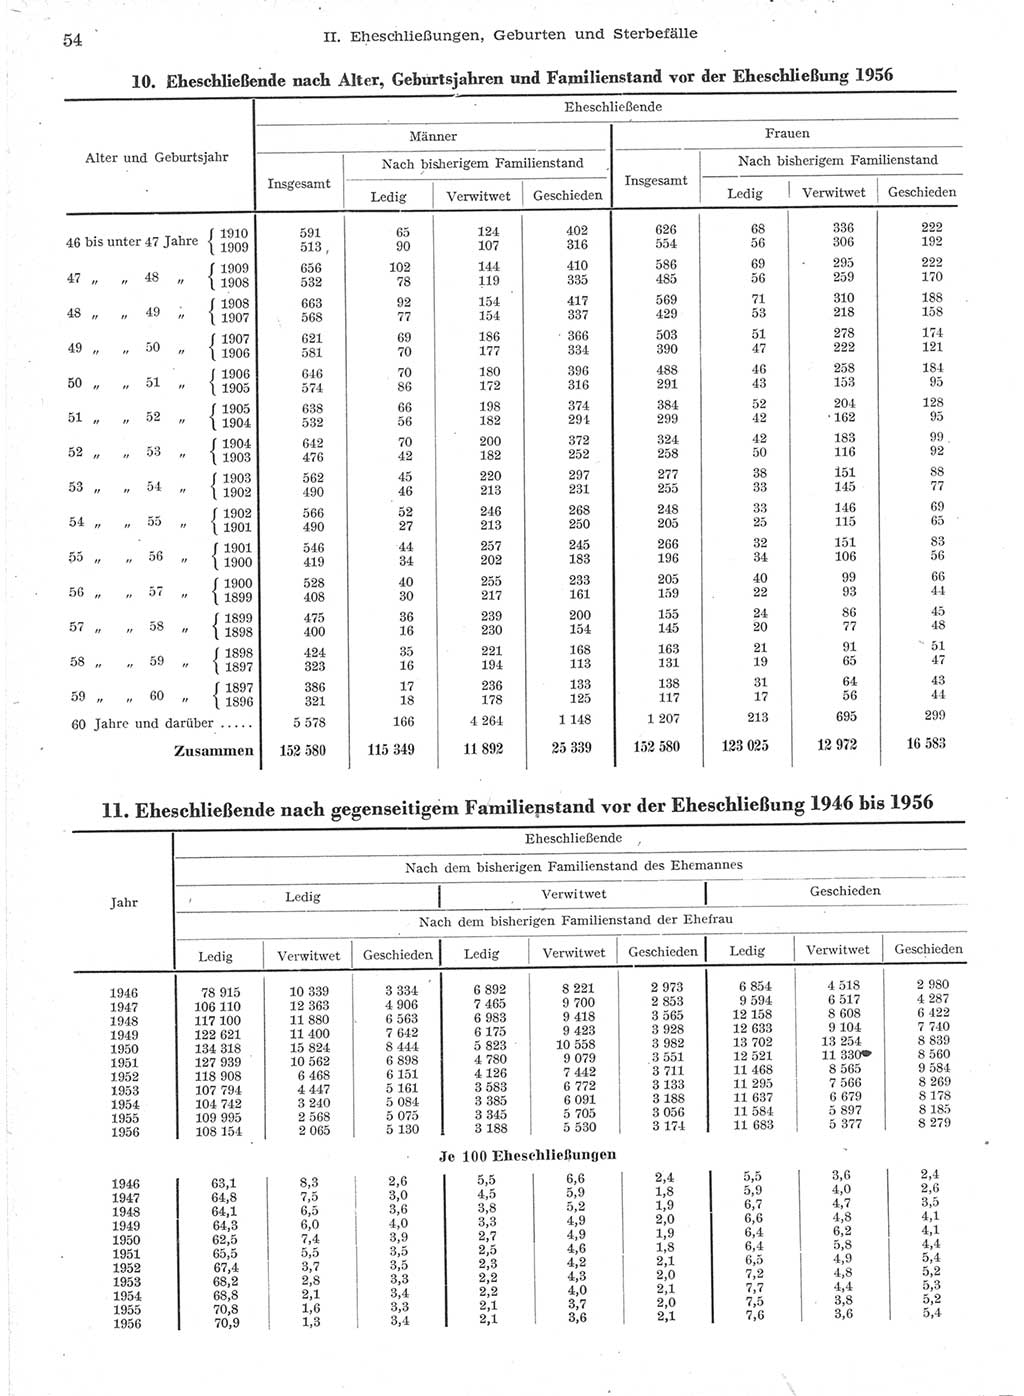 Statistisches Jahrbuch der Deutschen Demokratischen Republik (DDR) 1957, Seite 54 (Stat. Jb. DDR 1957, S. 54)